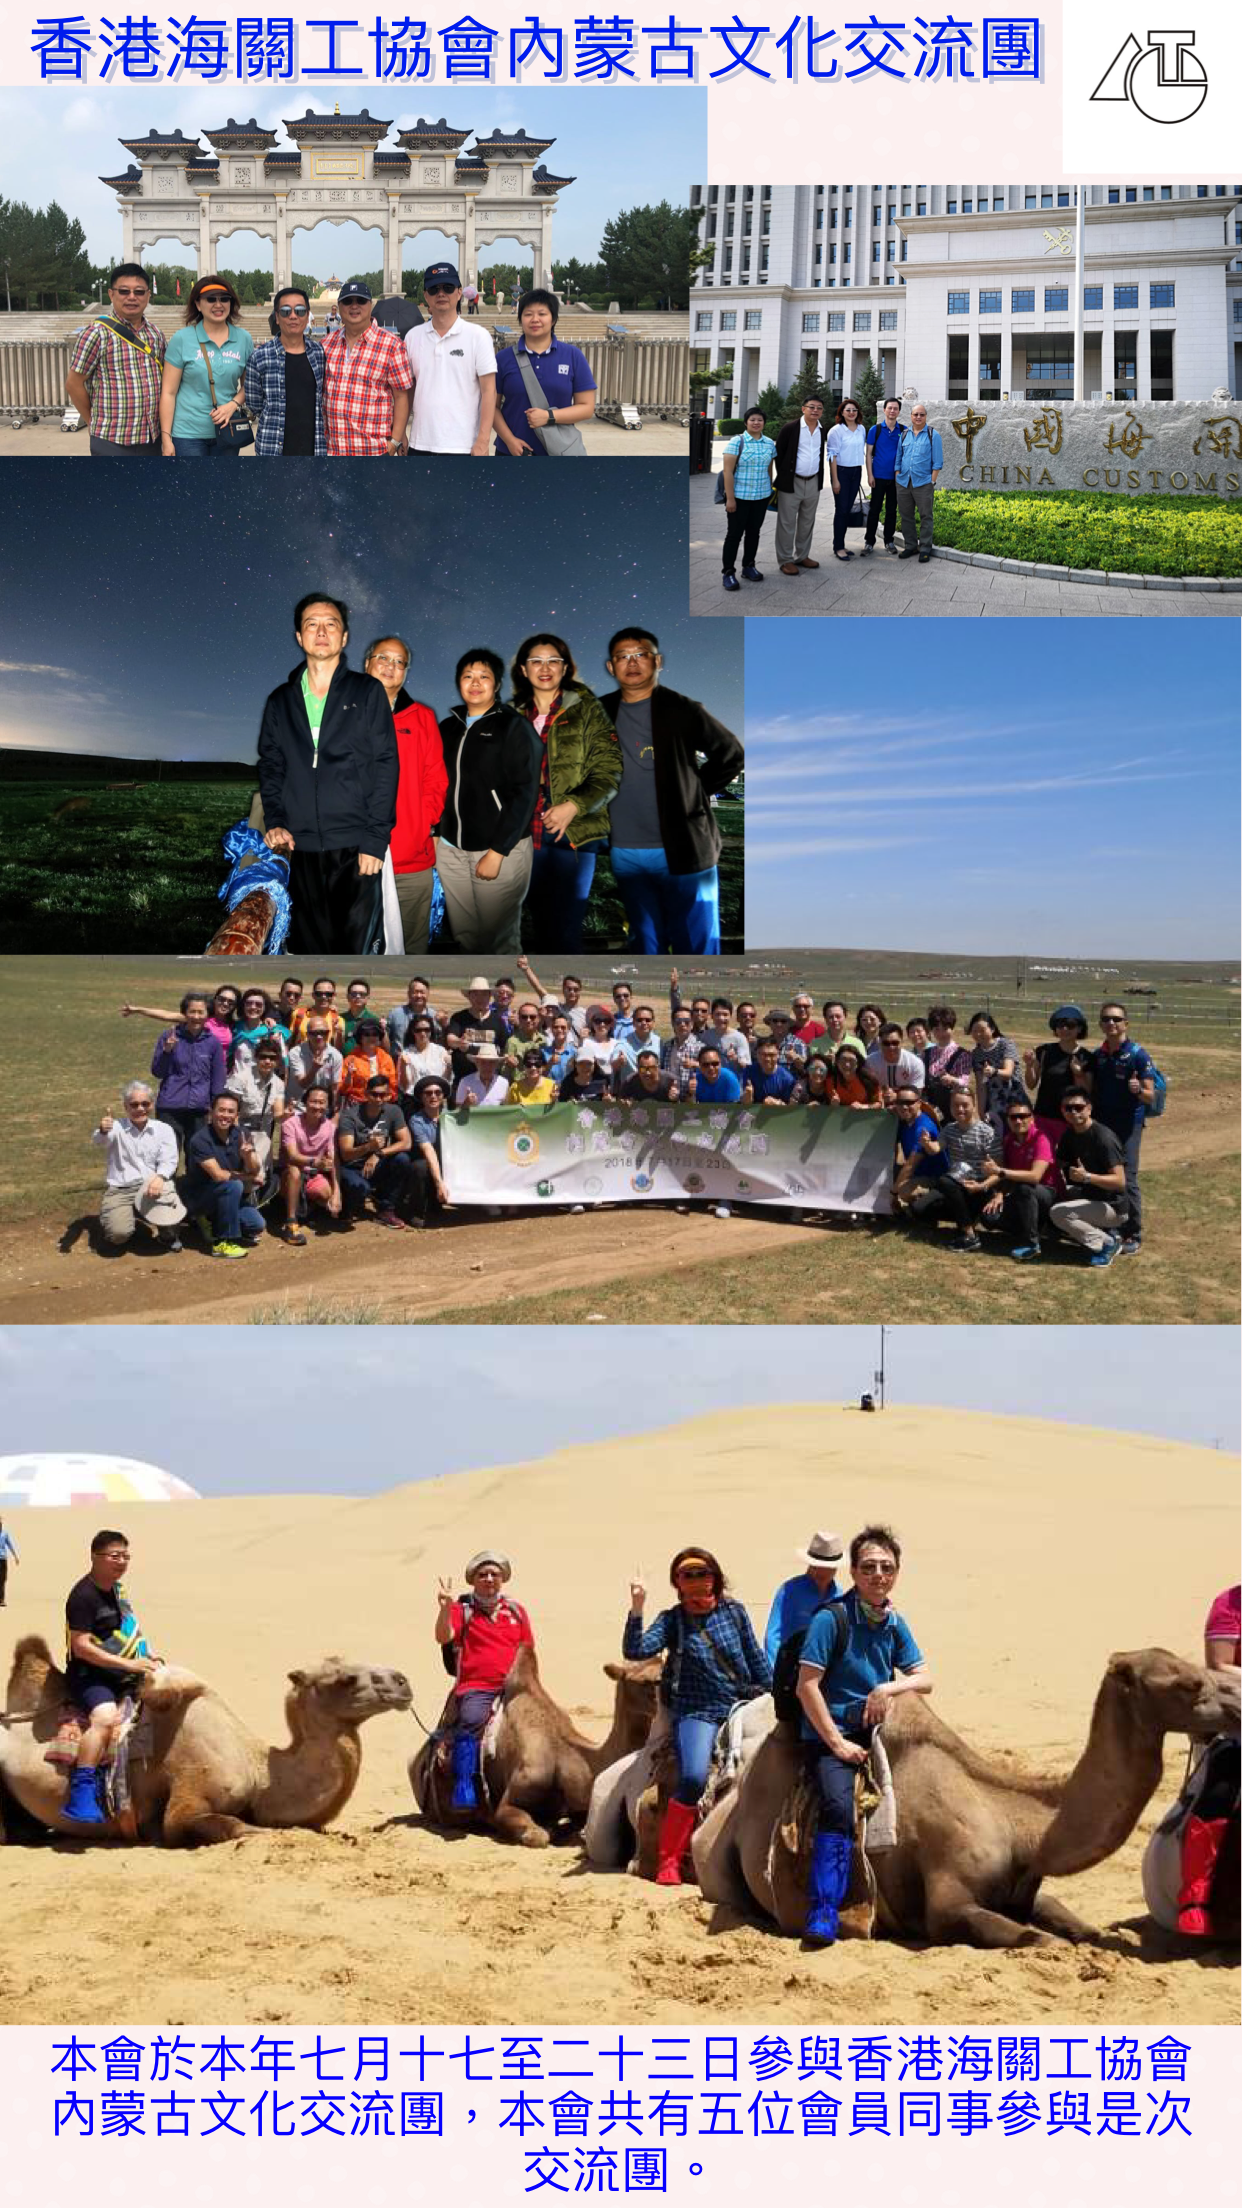 2018年內蒙古文化交流團